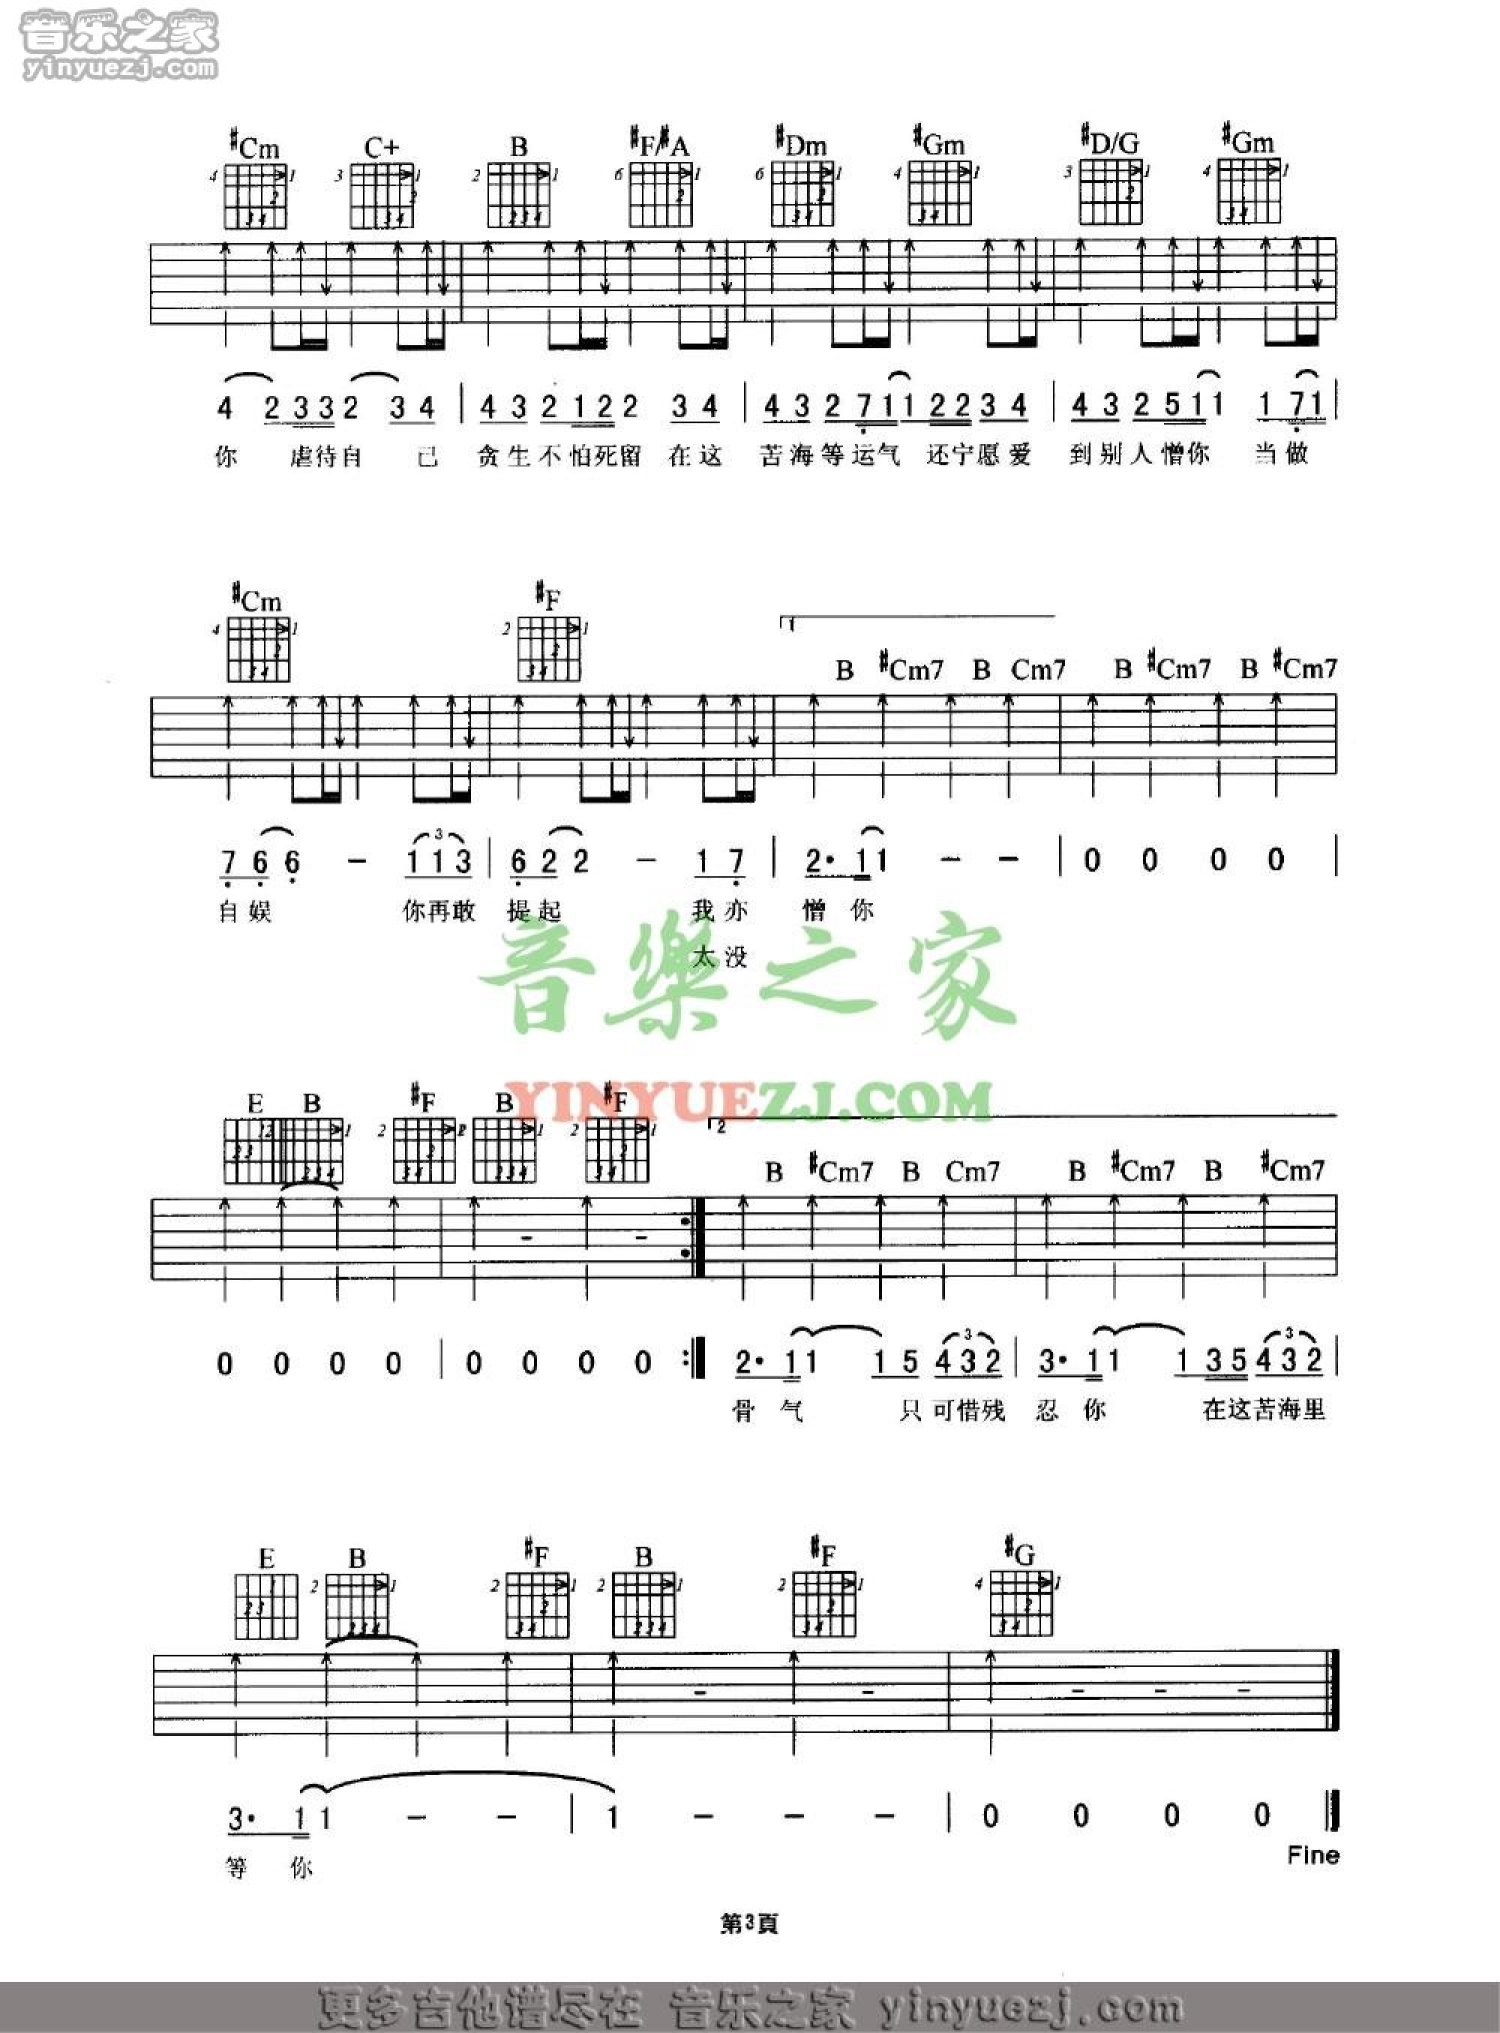 ★ 孤雏 - Sheet Music / Piano Score Free PDF Download - HK Pop Piano Academy